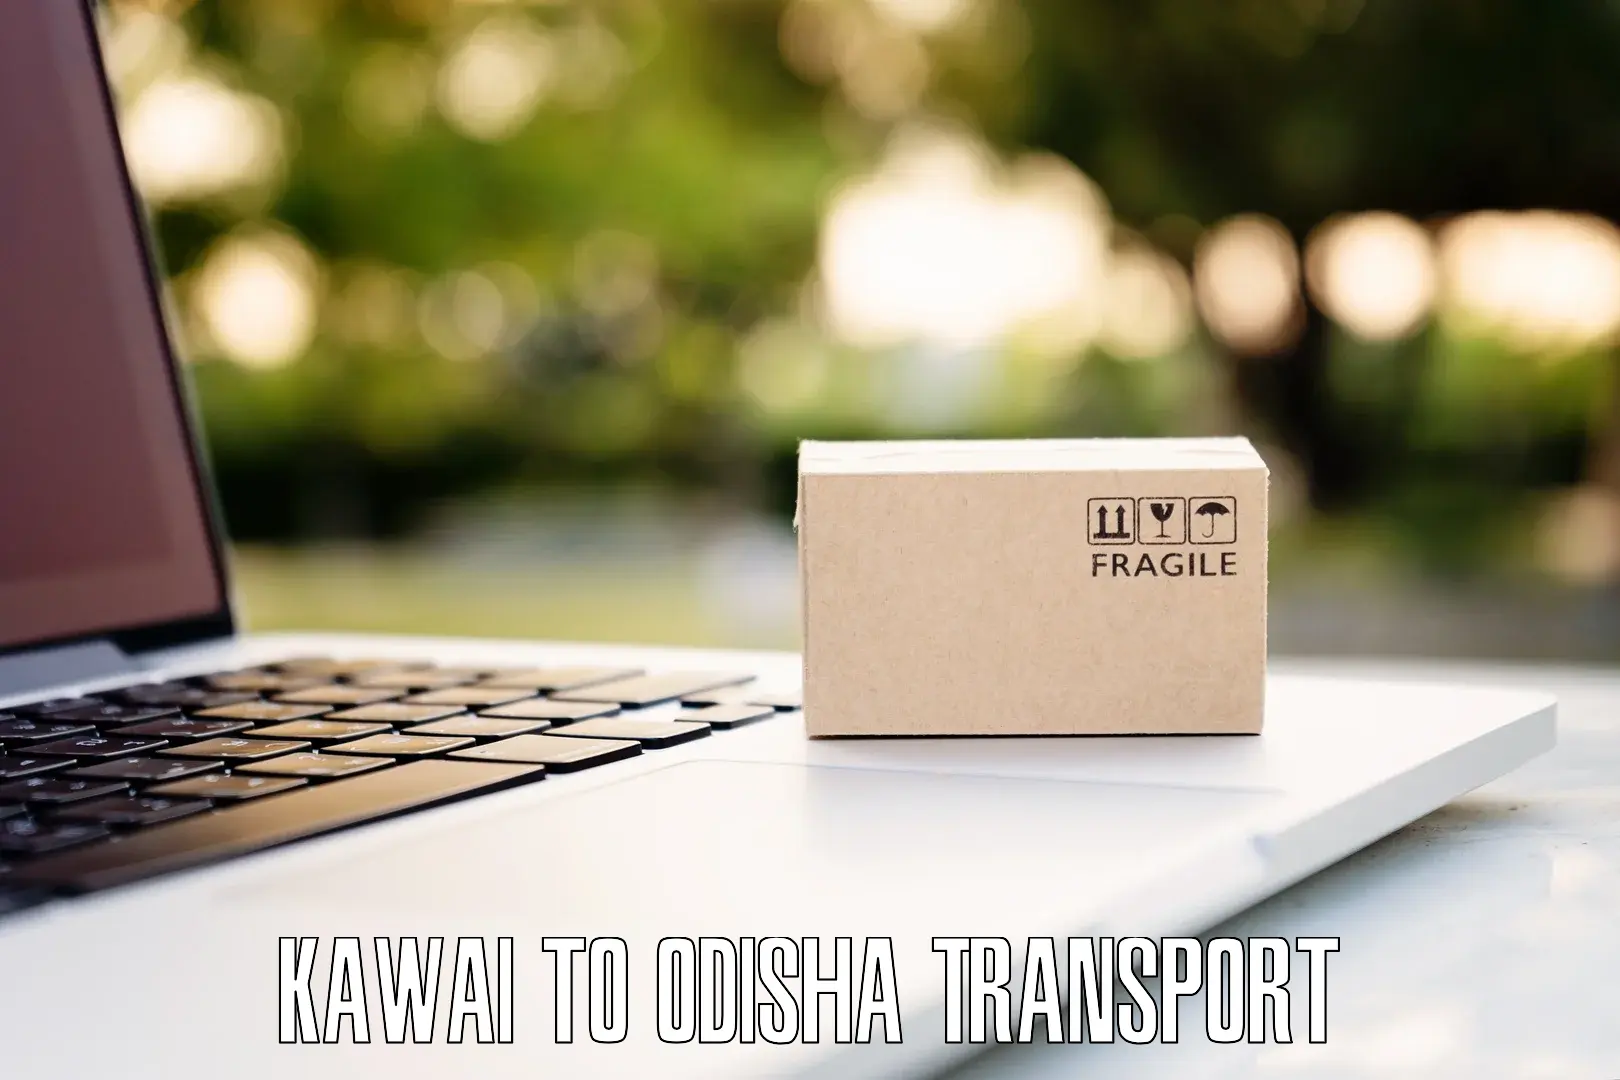 Transport shared services Kawai to Melchhamunda